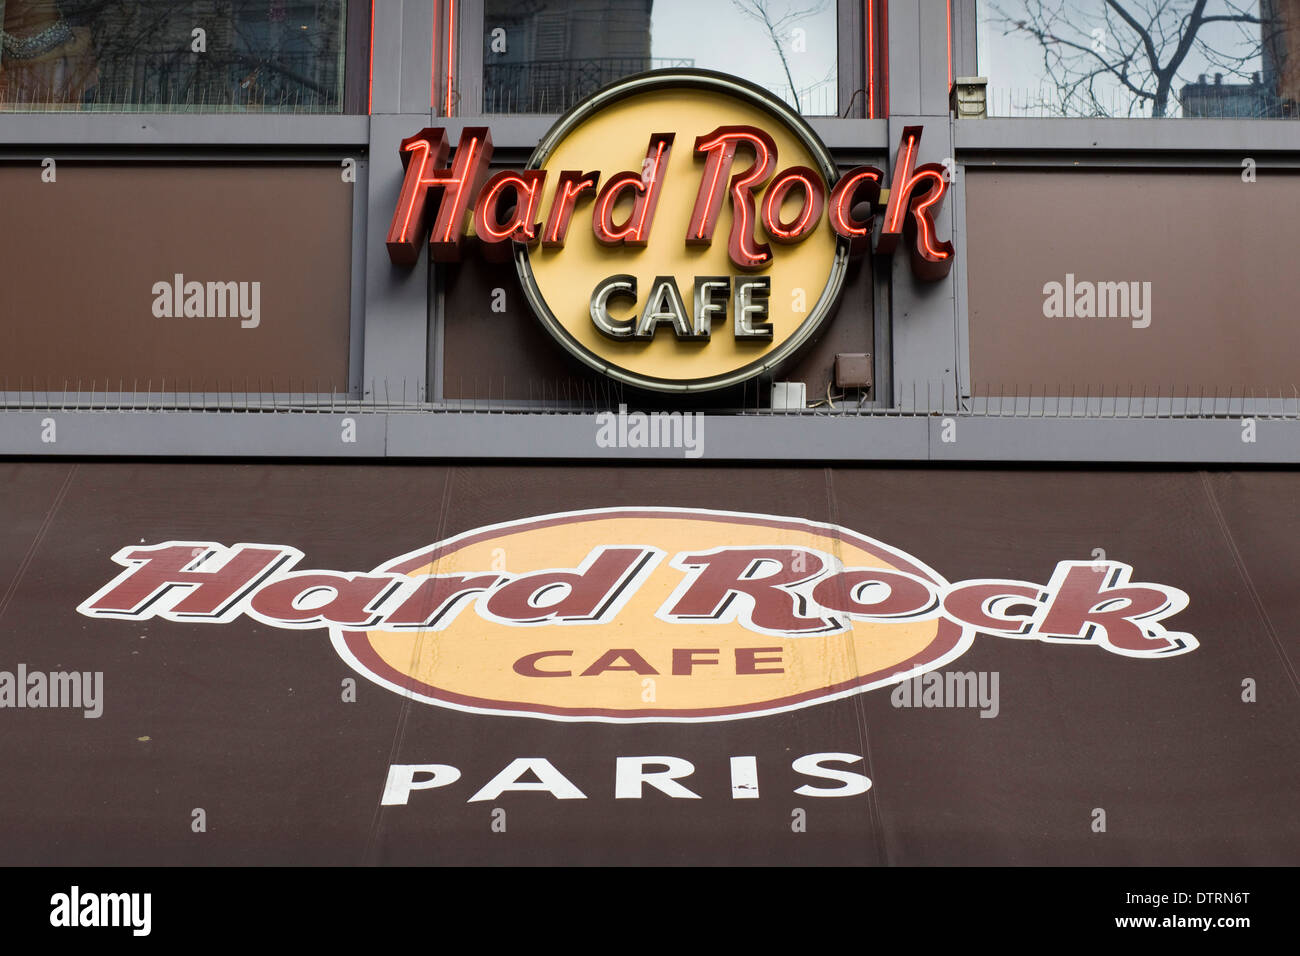 Zeichen und Markise Eingang zum Hard Rock Café in Paris Frankreich  Stockfotografie - Alamy